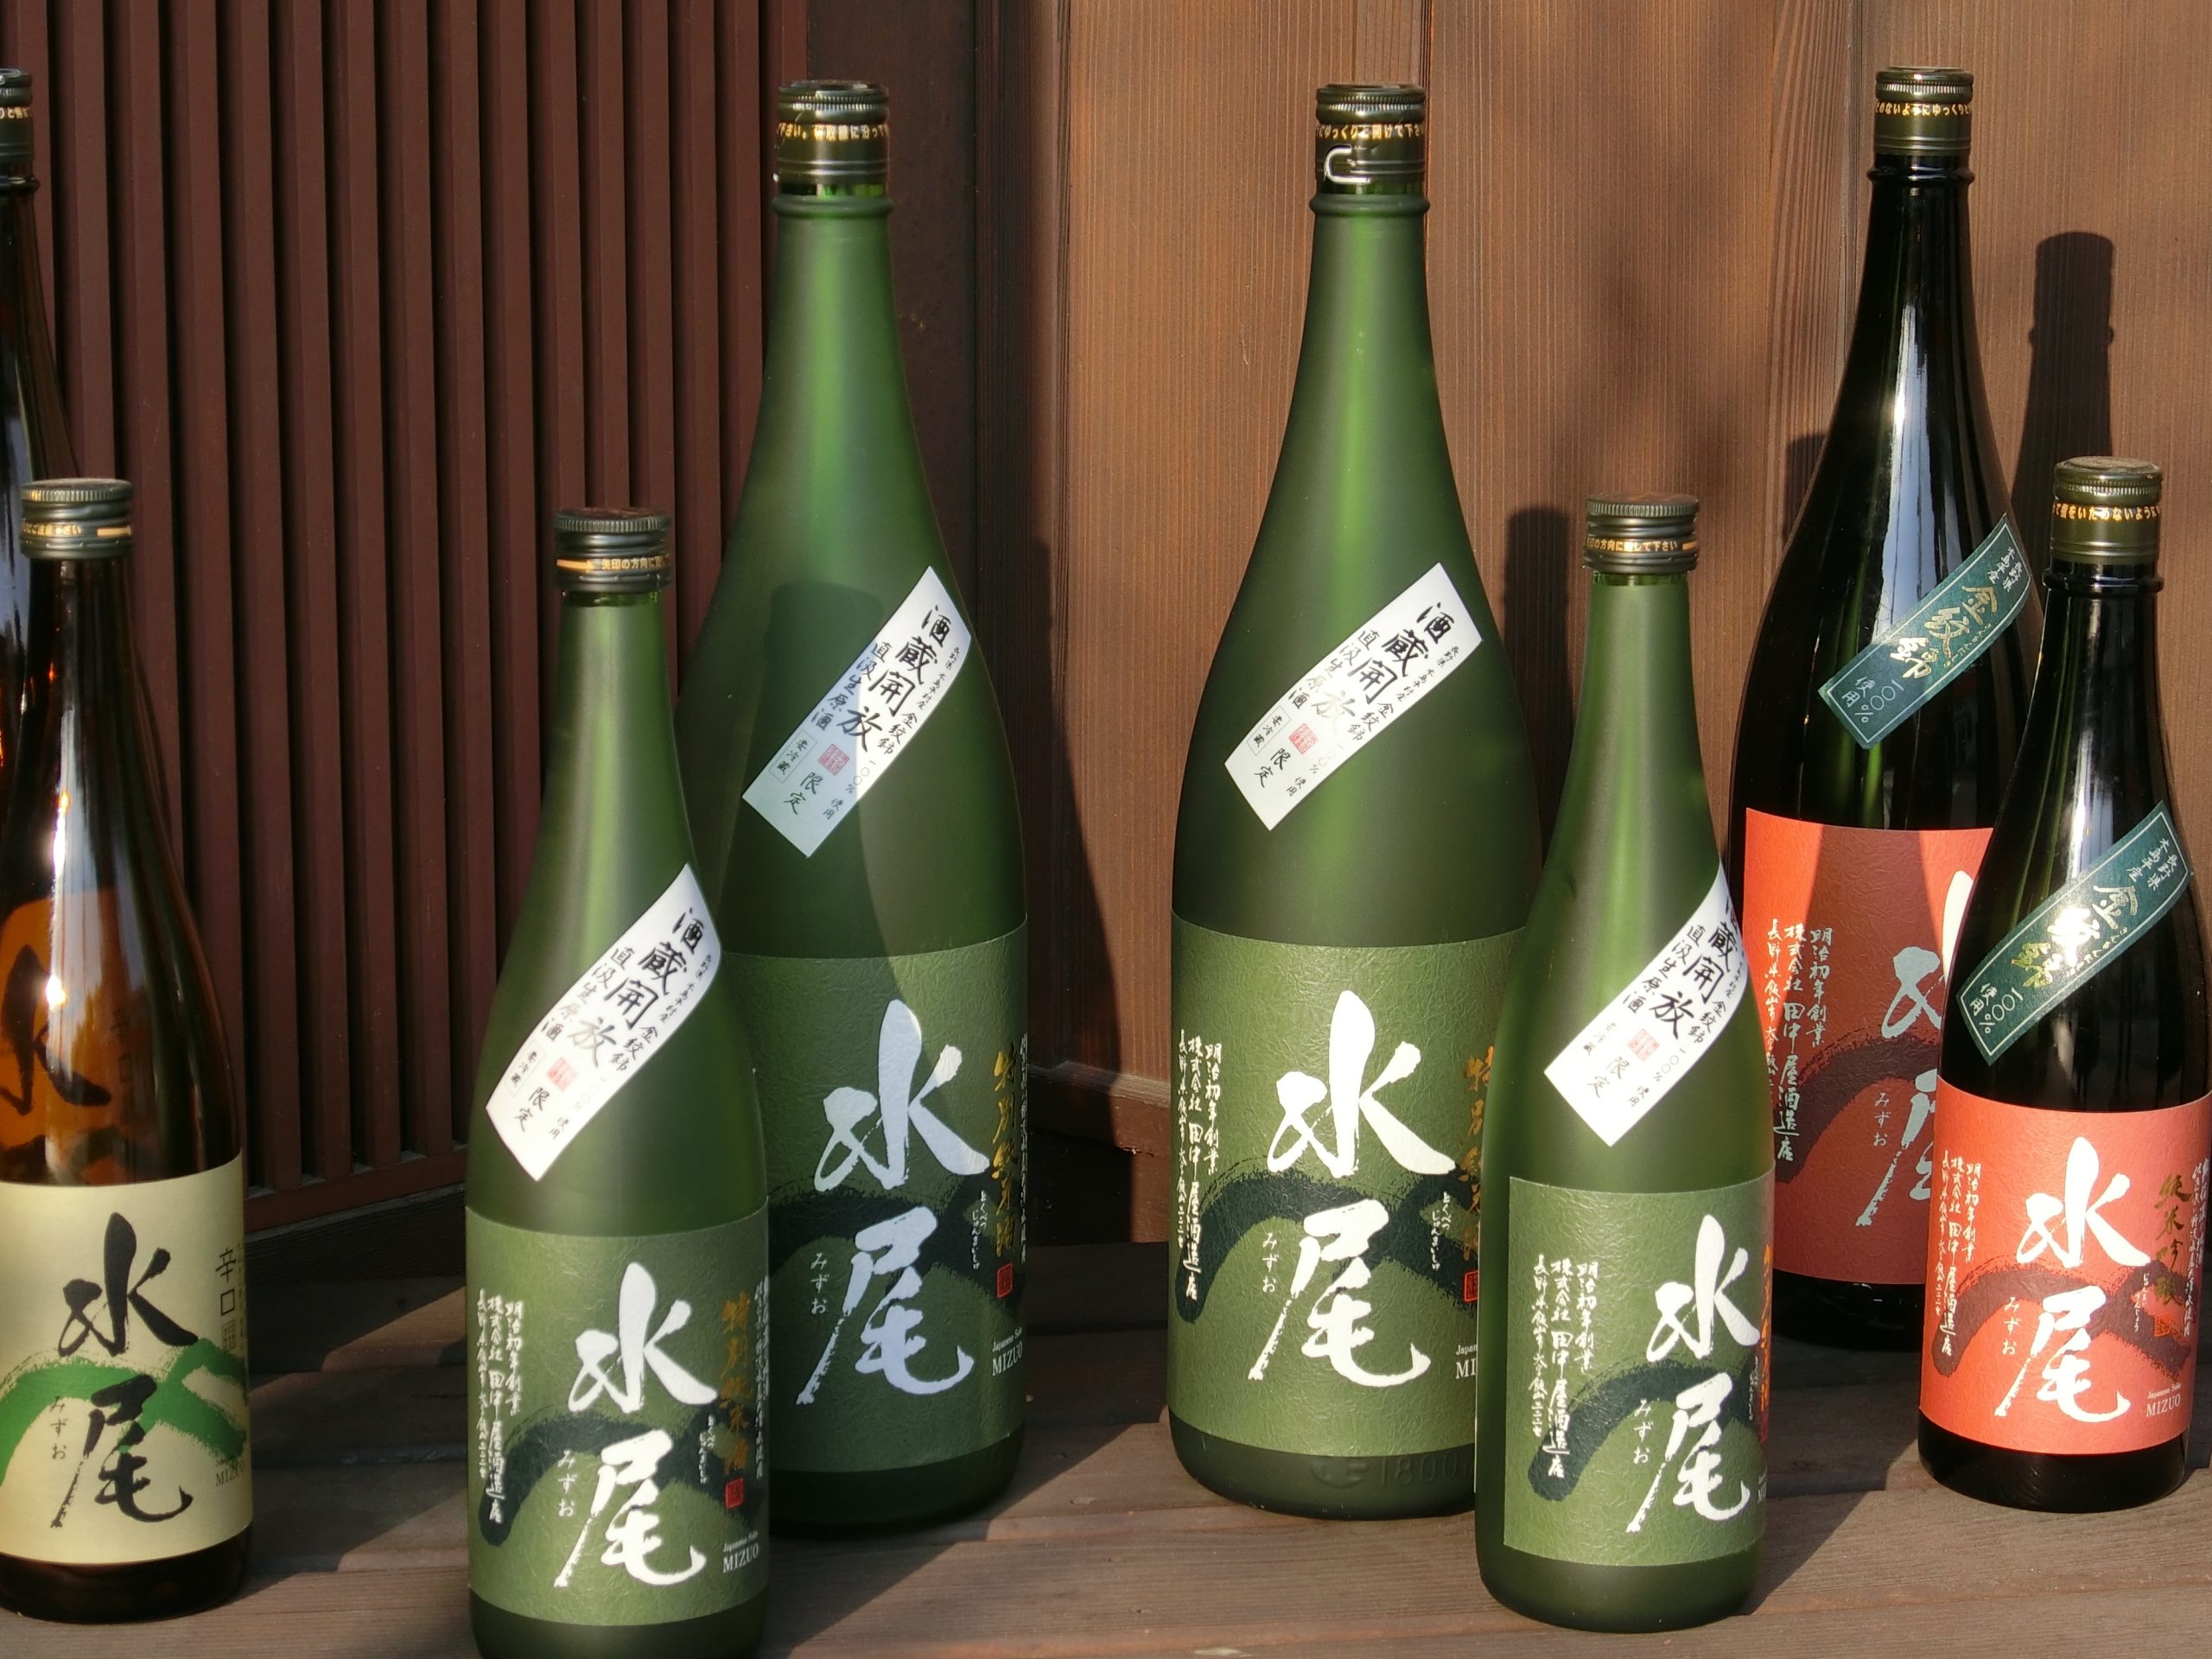 Bottles of sake at Mizuo Brewery, Iiyama